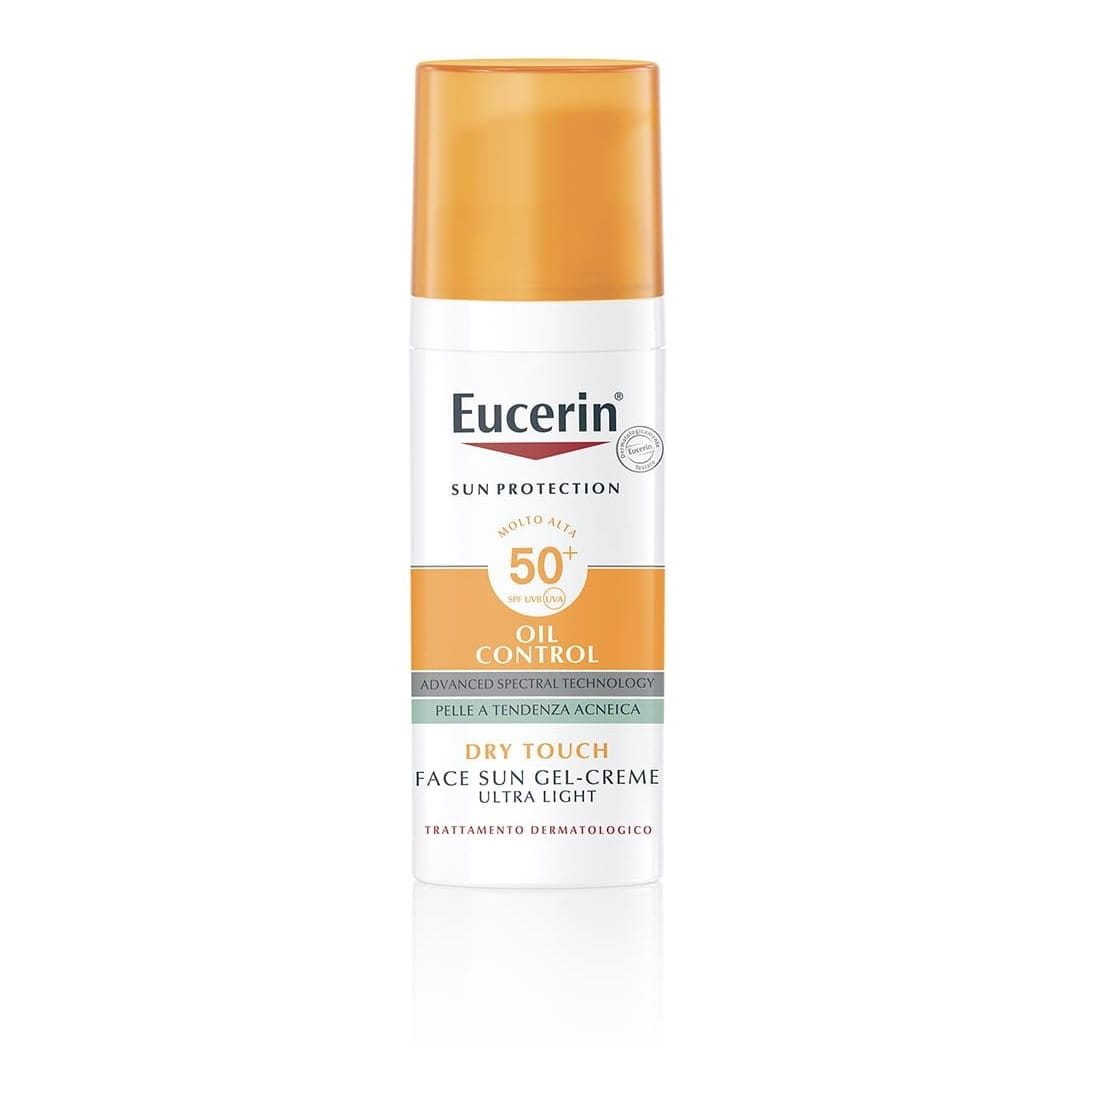 Eucerin Oil Control Sun Gel-Creme Tocco Secco SPF 50+